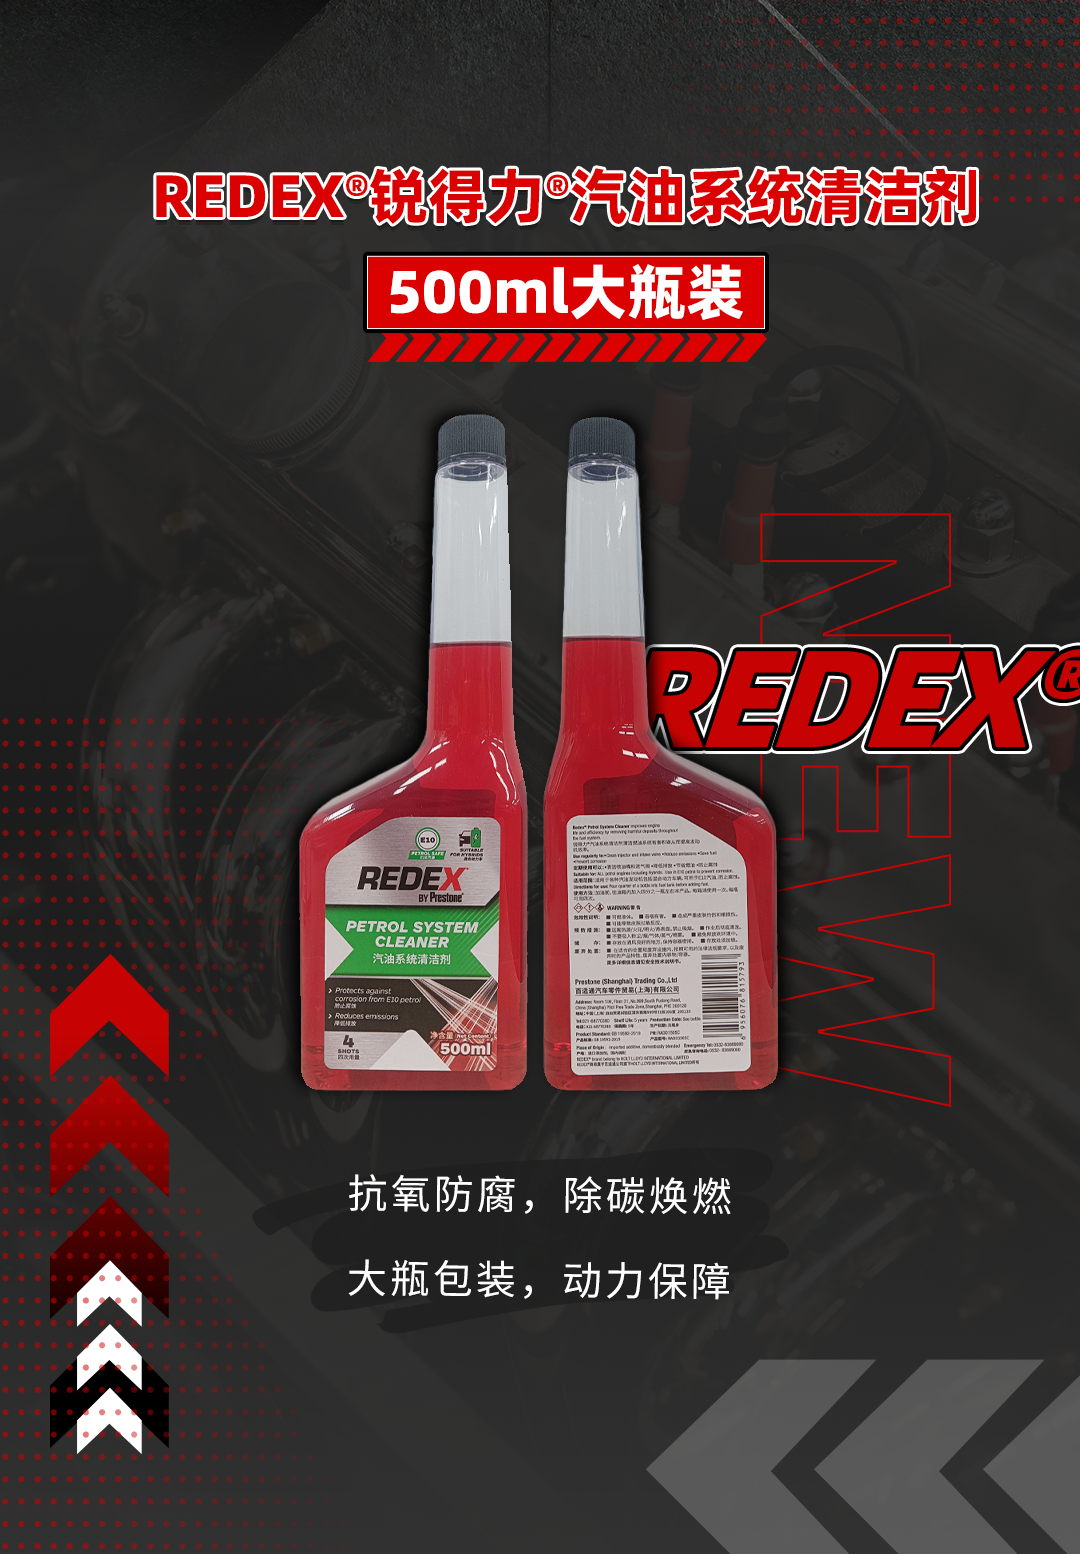 新品上市 | 从心所驭，劲擎驰骋！REDEX®500ml大瓶装重磅来袭！